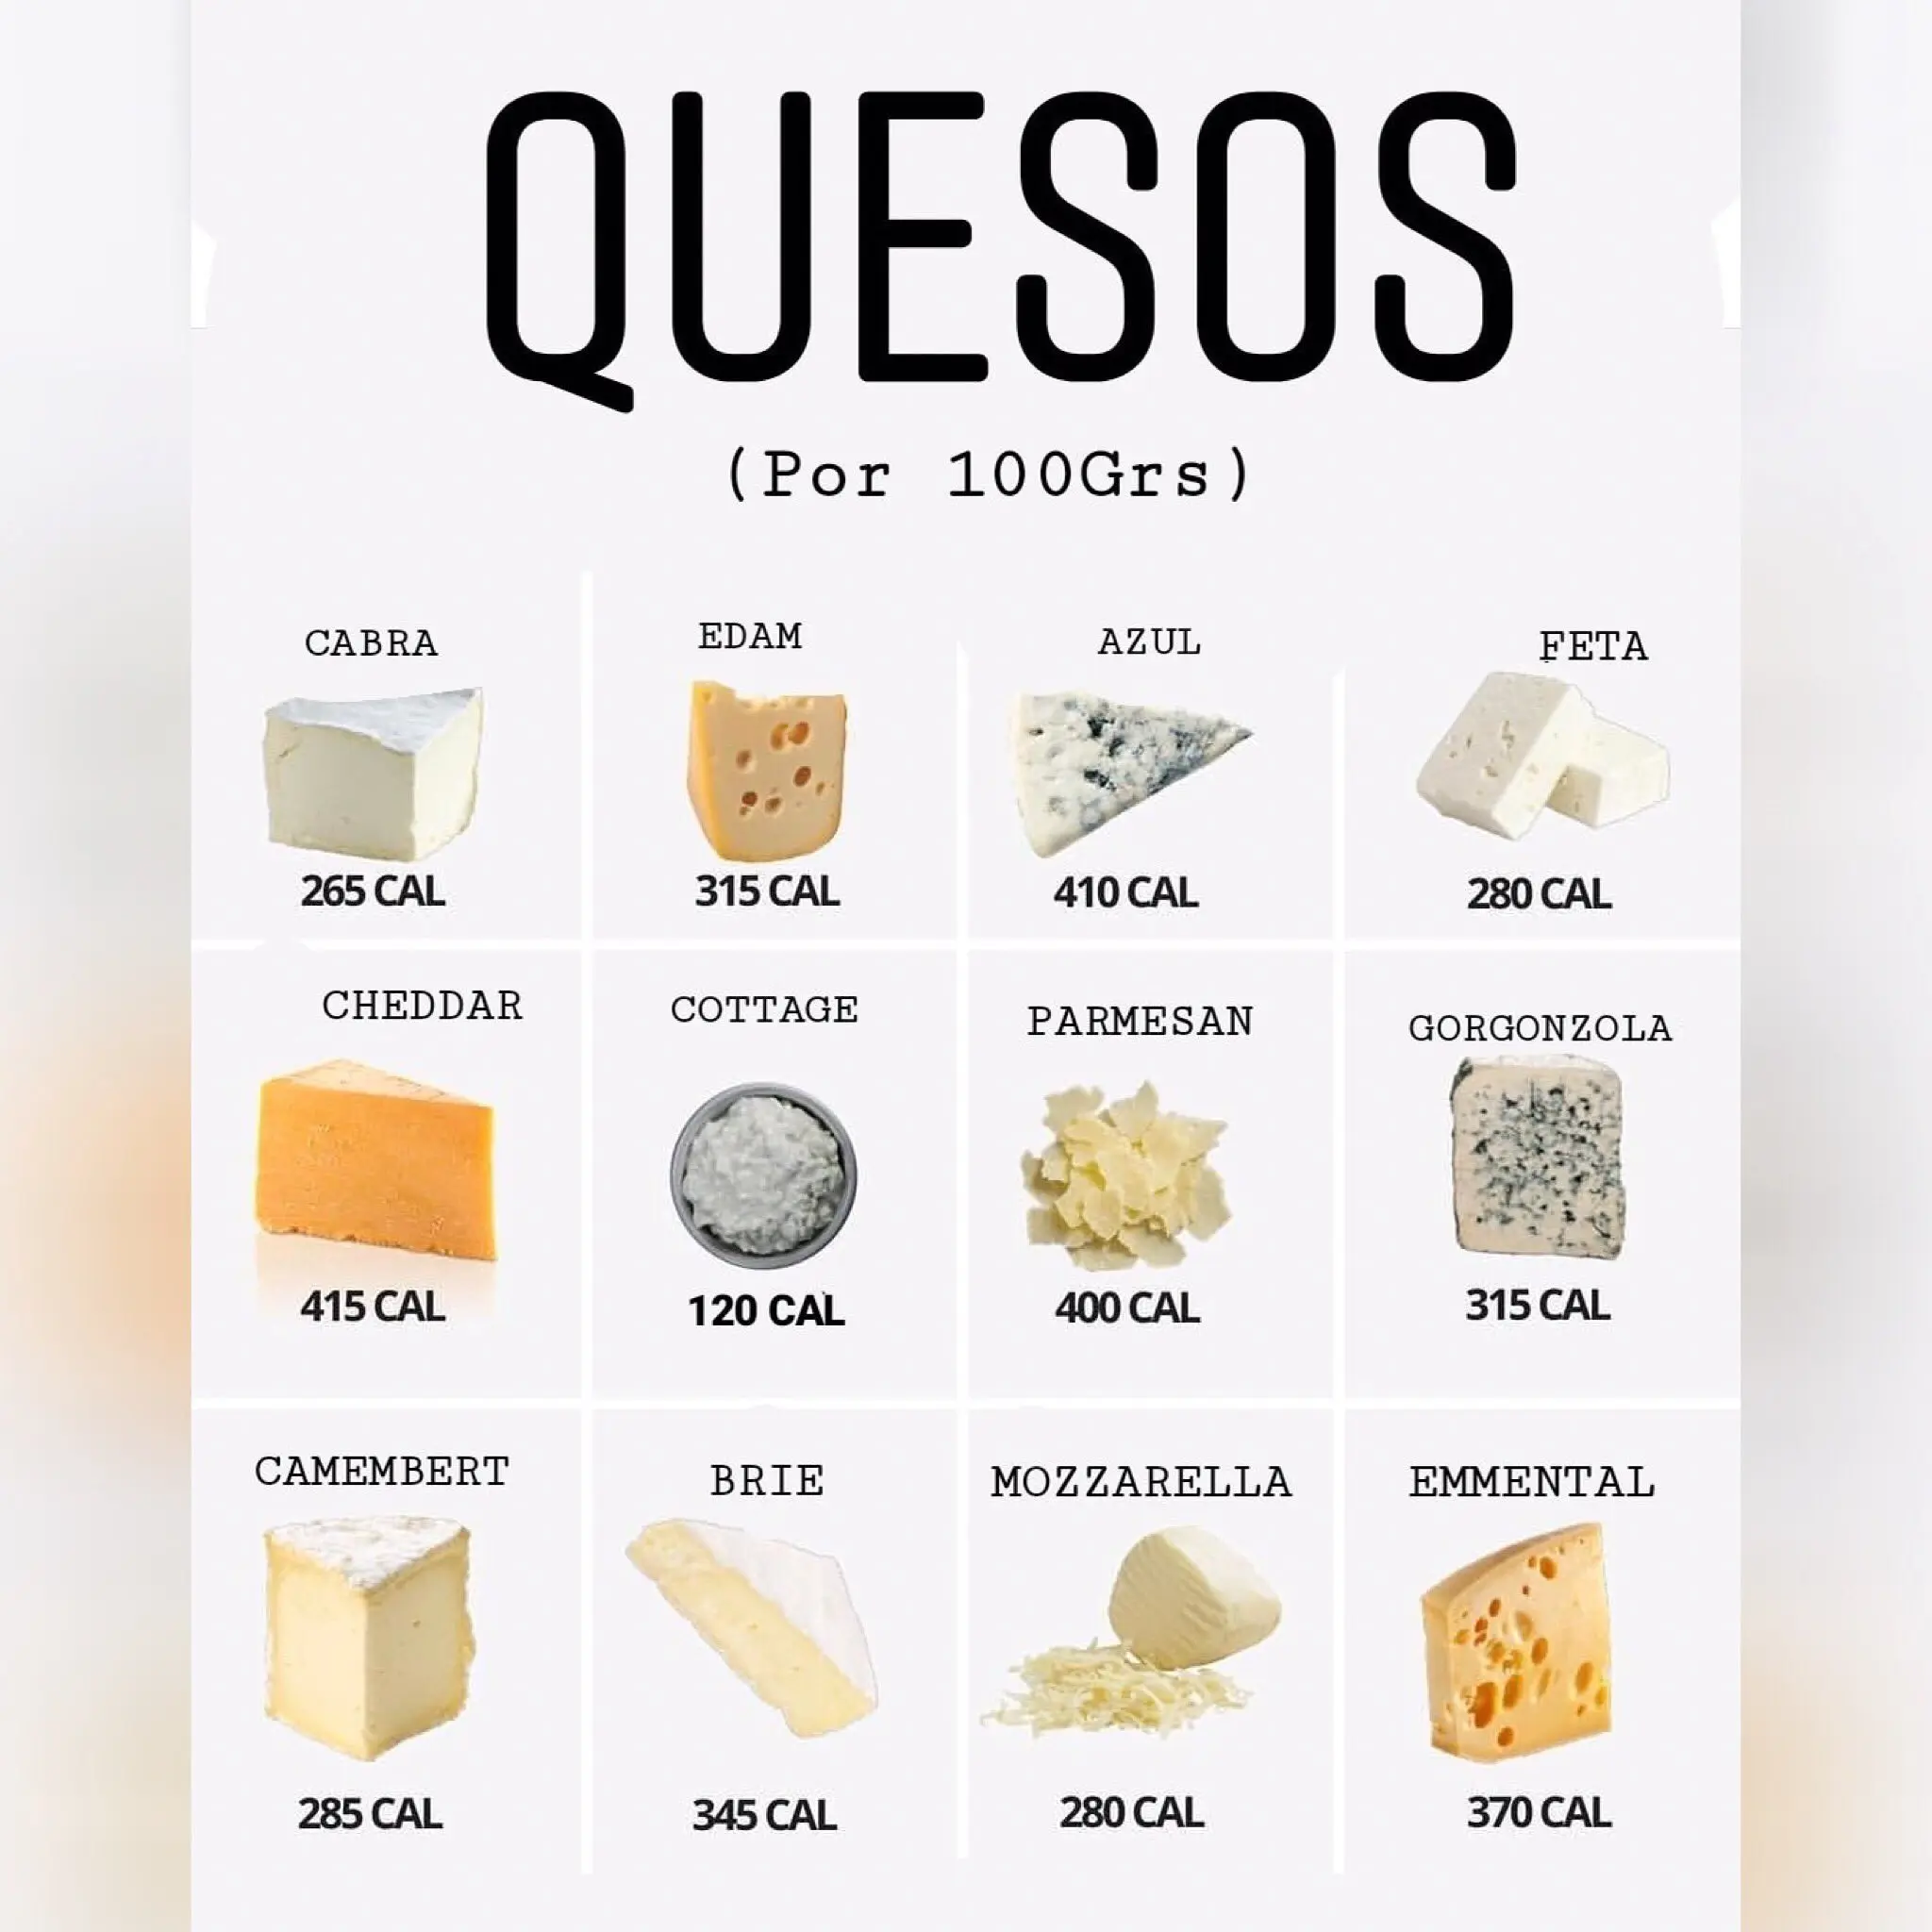 calorias del queso oaxaca - Qué tan bueno es el queso Oaxaca